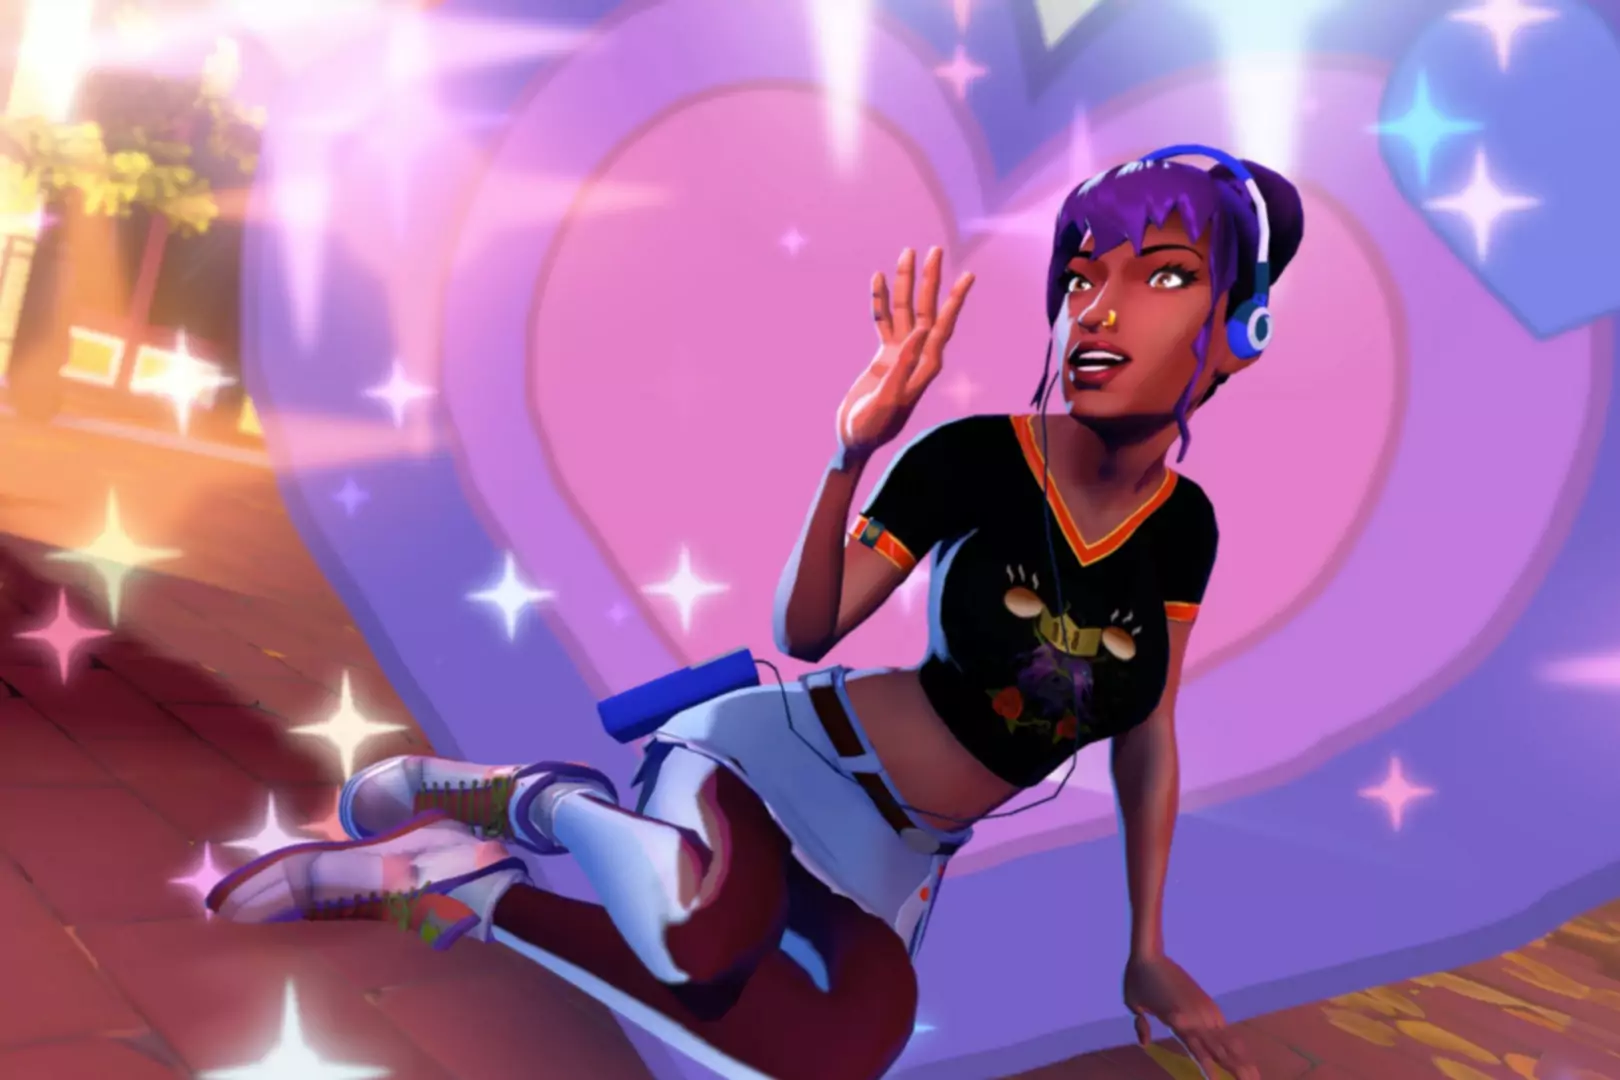 Capture d'écran du jeu Thirsty Suitors montrant un personnage assis avec des étoiles et des cœurs autour de lui.